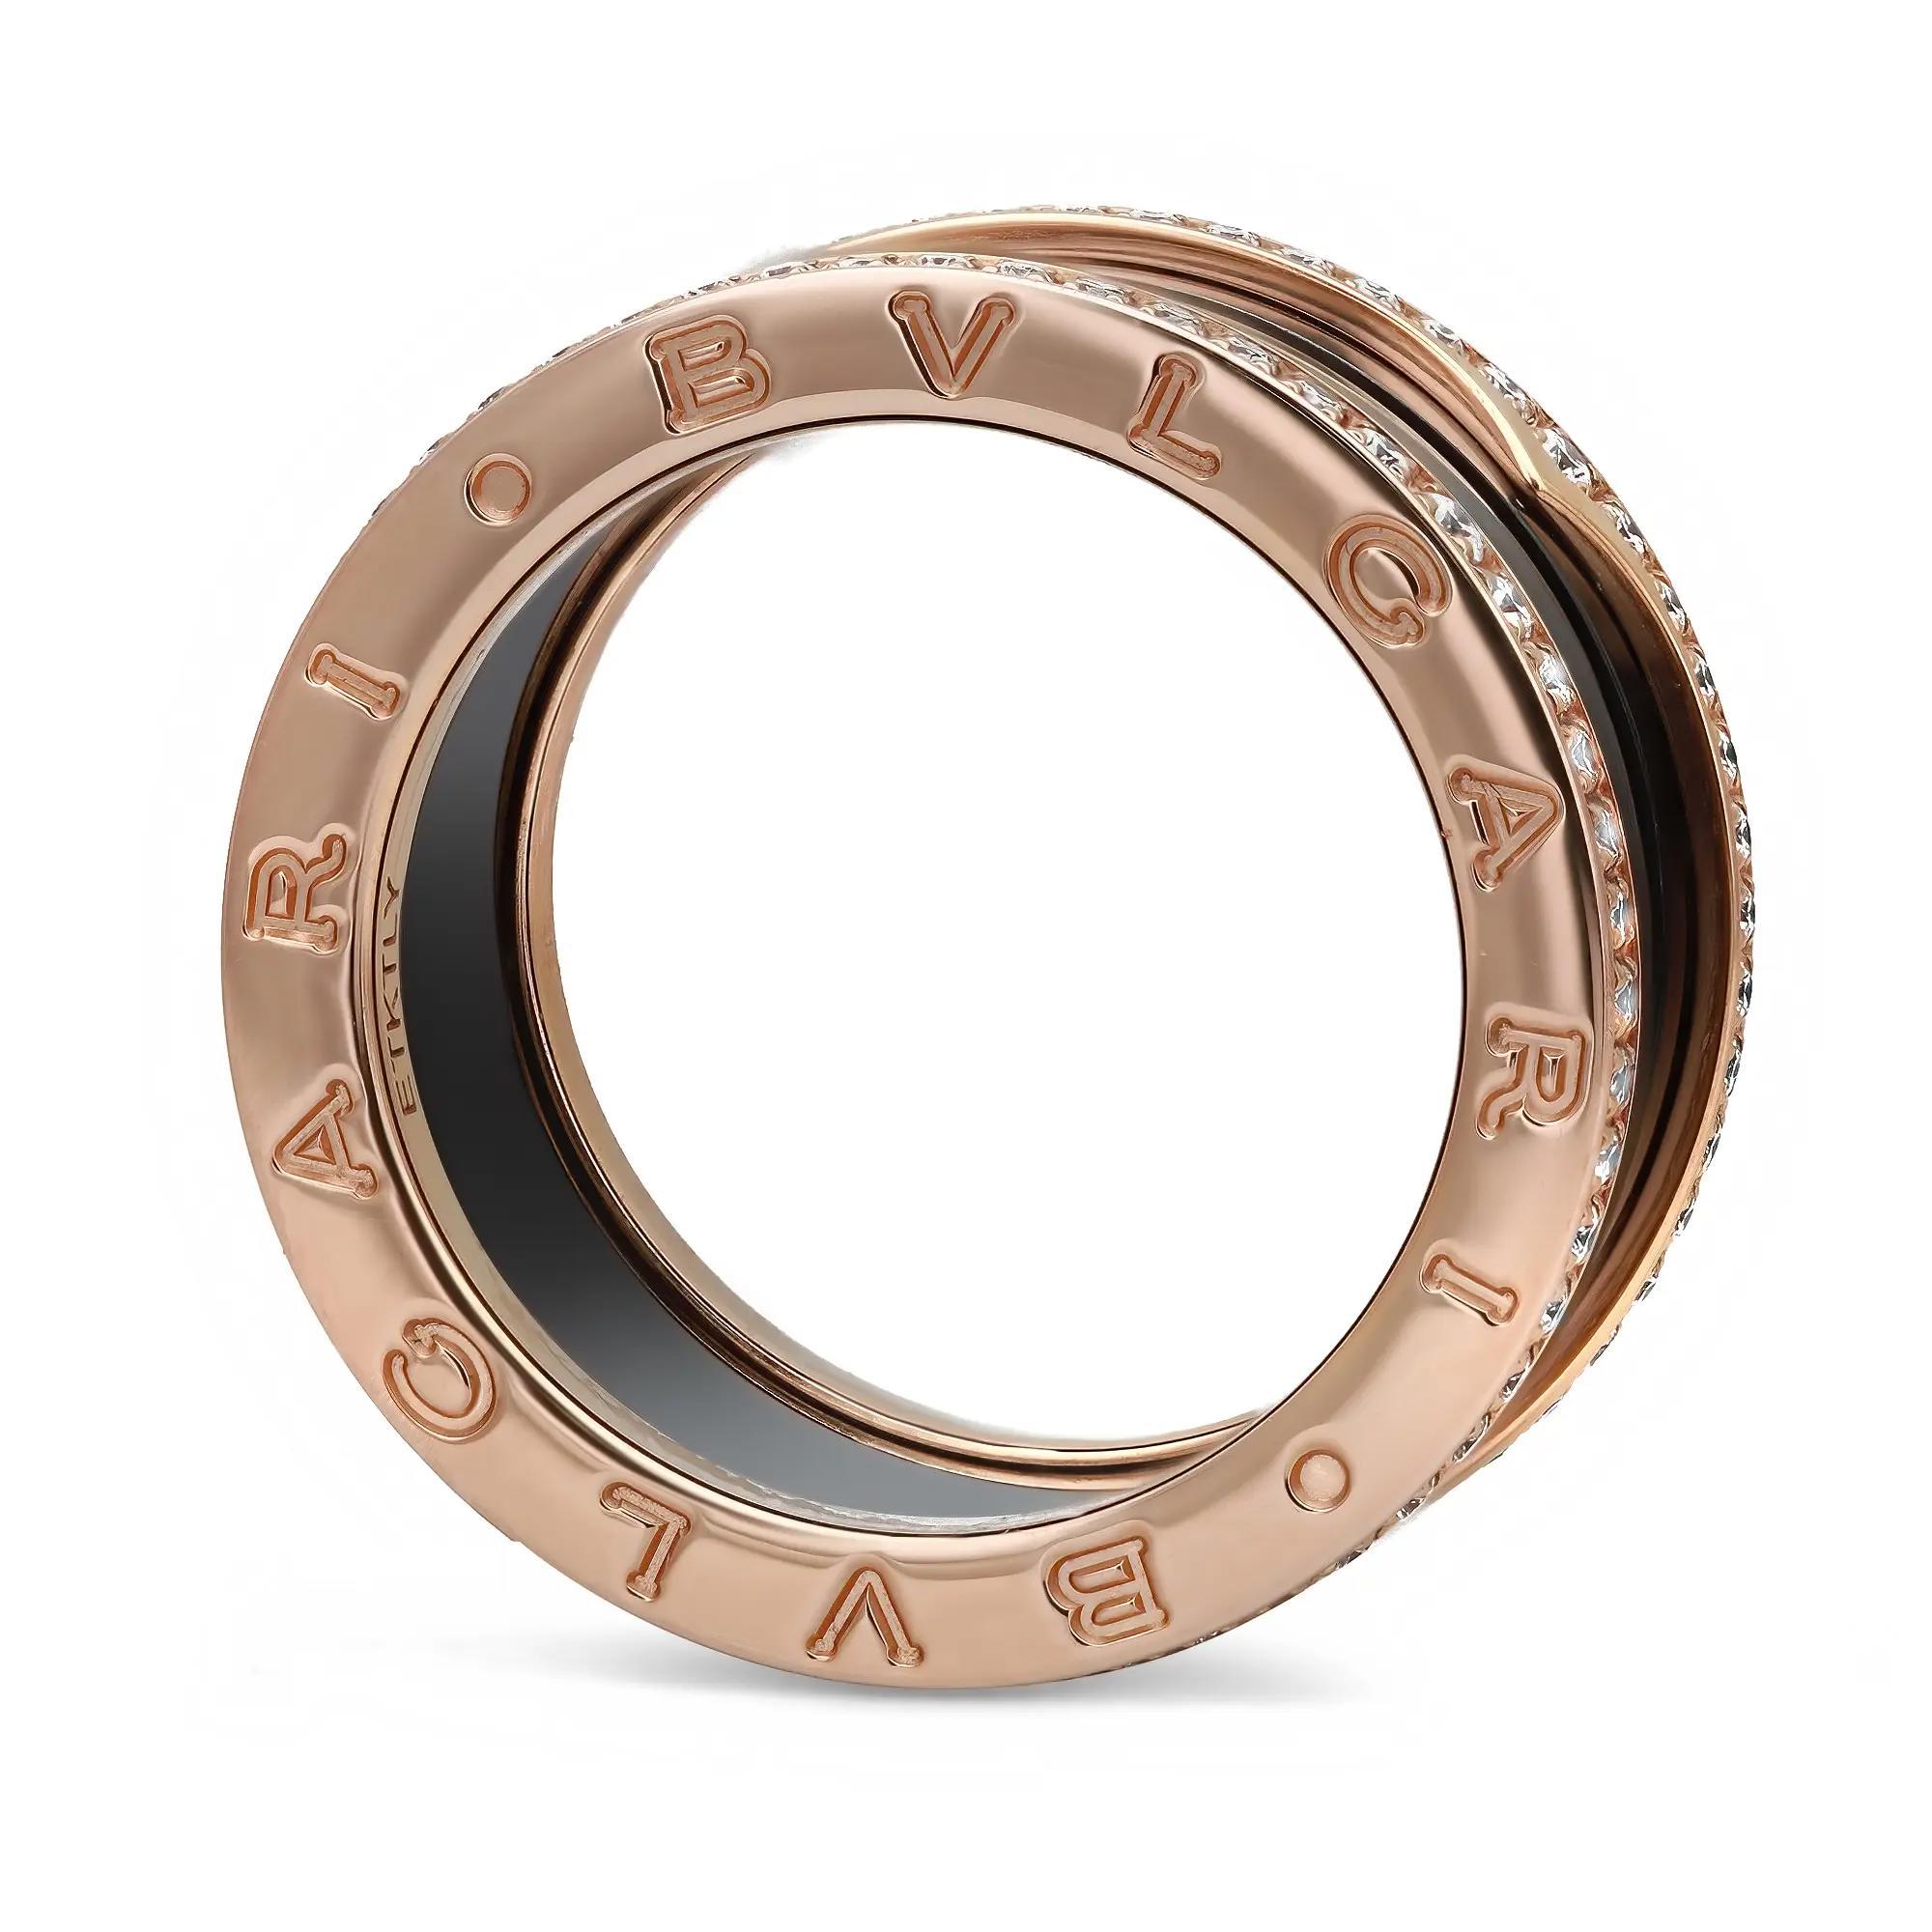 Dieser wunderschöne Ring aus der Bvlgari B.zero1 Kollektion mit vier Bändern ist aus glänzendem 18 Karat Roségold gefertigt. Er zeichnet sich durch einen unverwechselbaren Spiralring mit vier Bändern aus, der an den Rändern mit runden Diamanten im